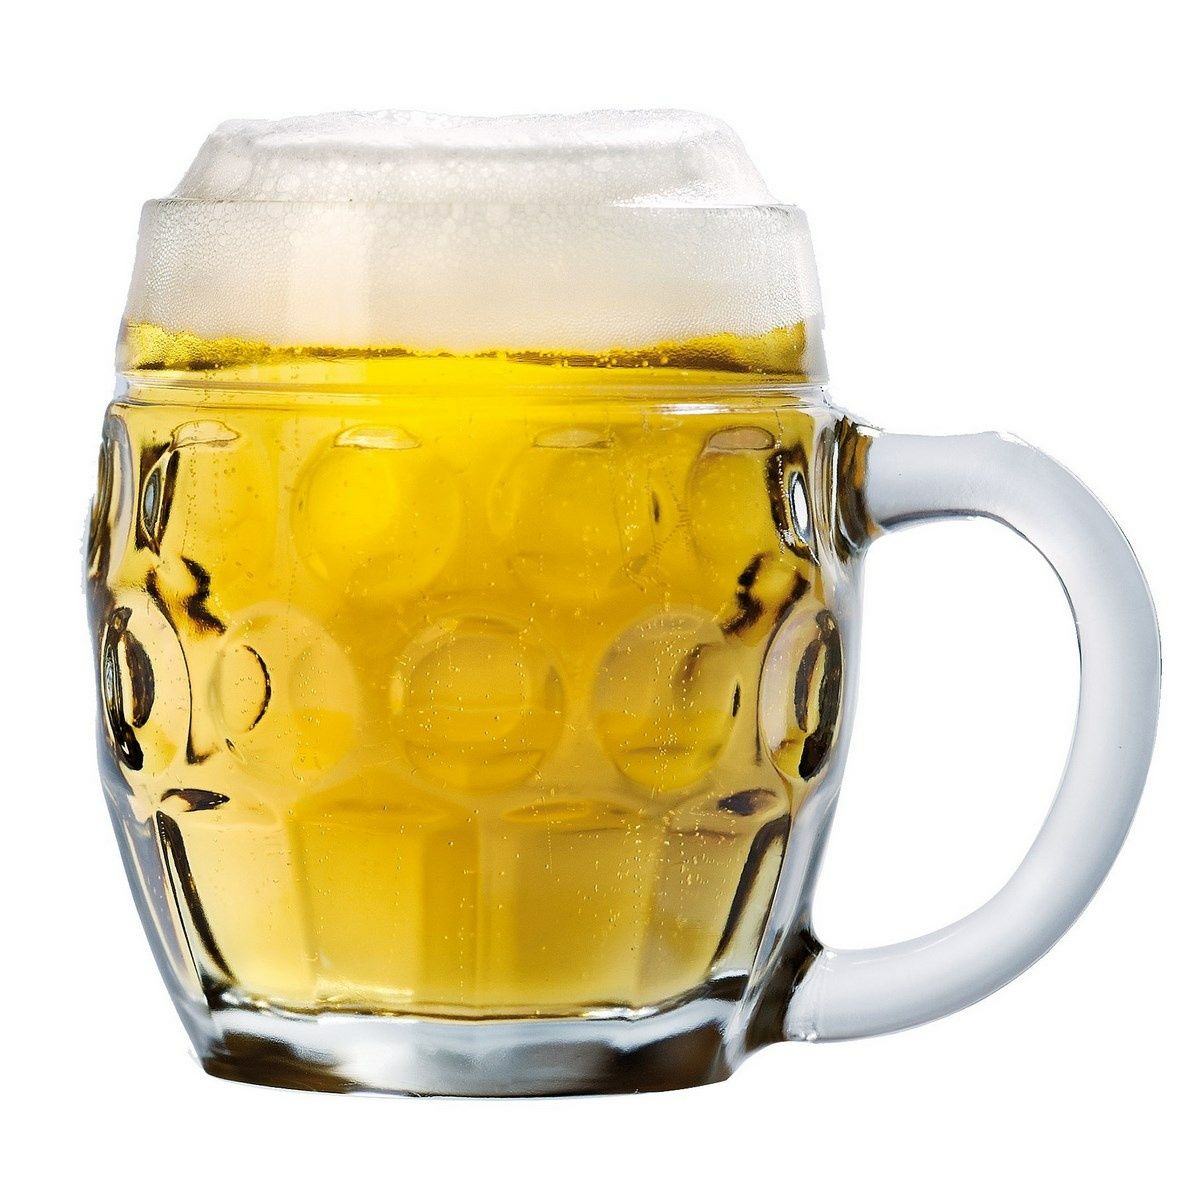 Pivní sklenice s uchem TÜBINGER, 0,4 l - 4home.cz